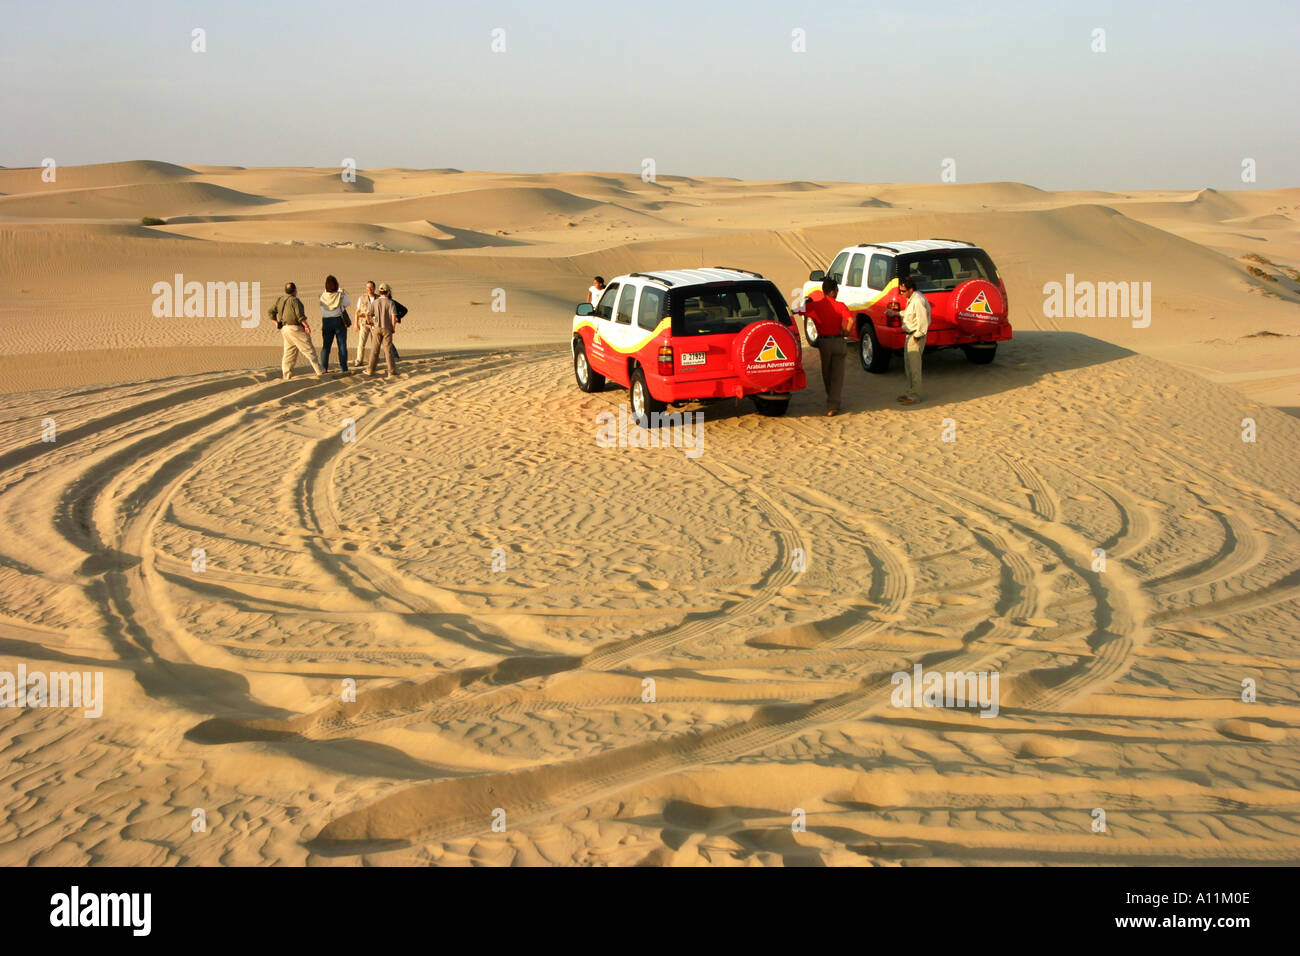 Désert d'arabie 4 roues motrices car trip, Abu Dhabi, Émirats arabes unis, Moyen Orient, notion de voyage aventure Banque D'Images